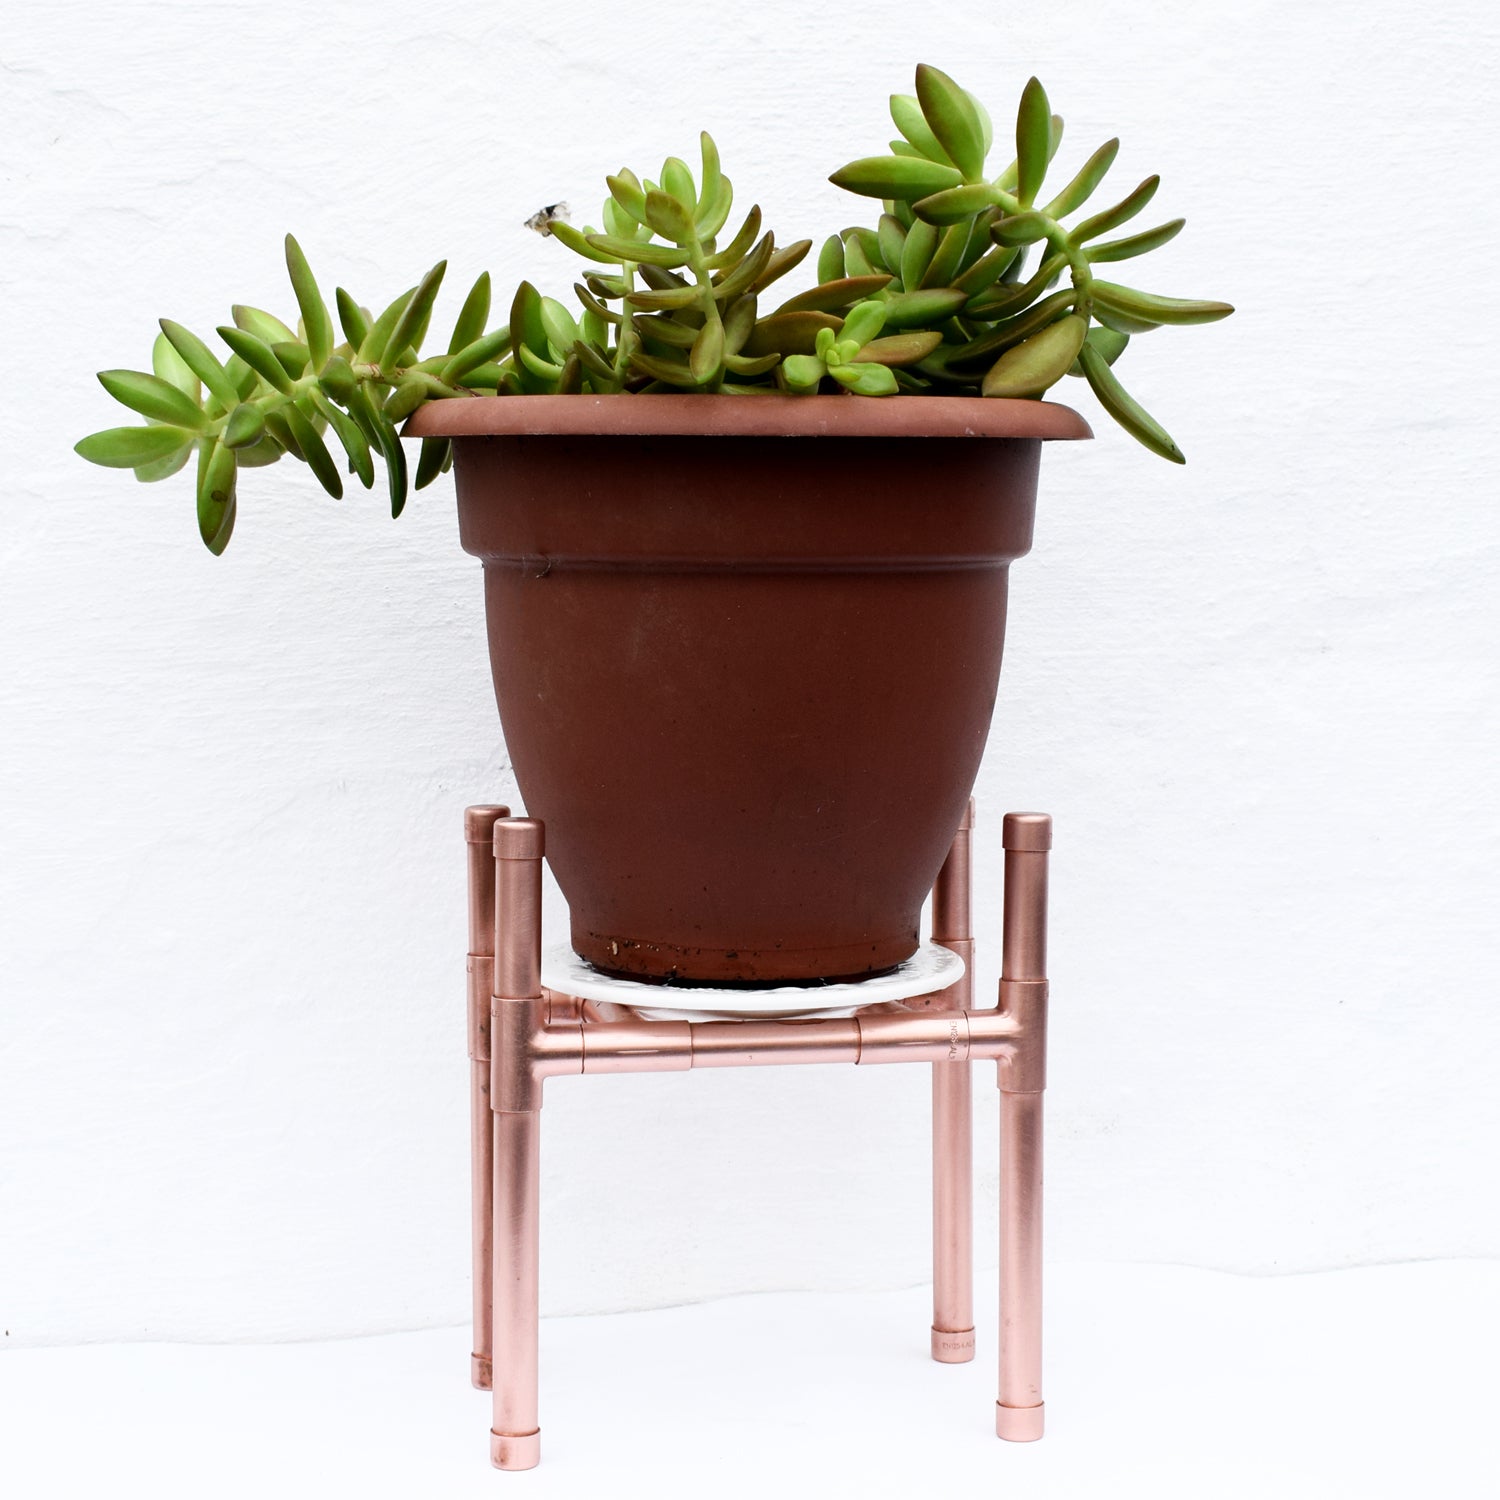 Small Copper Plant Stand - Proper Copper Design